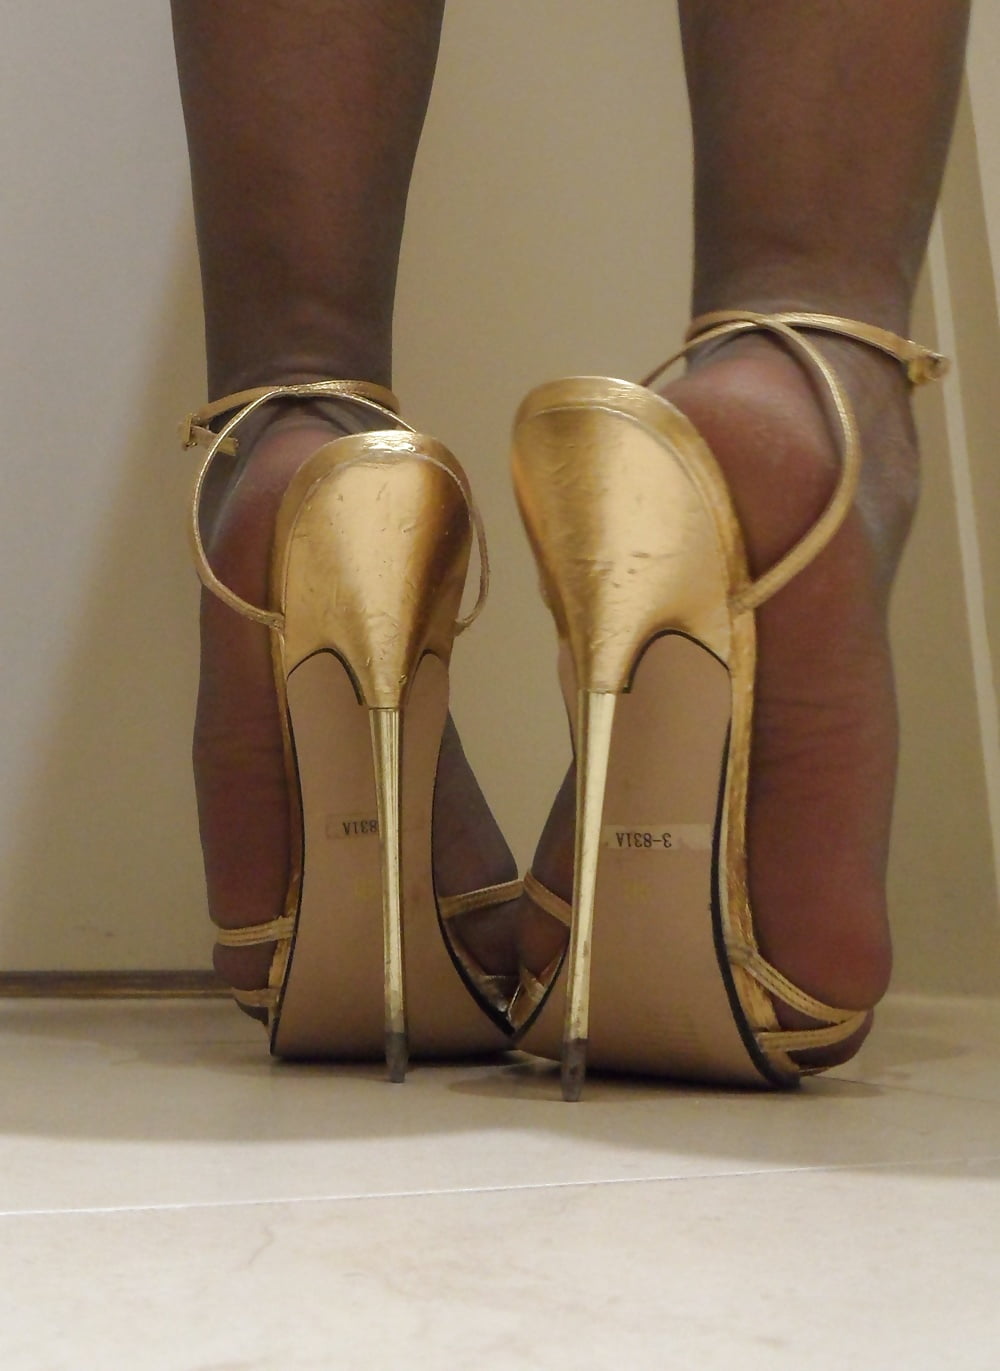 feel the heels